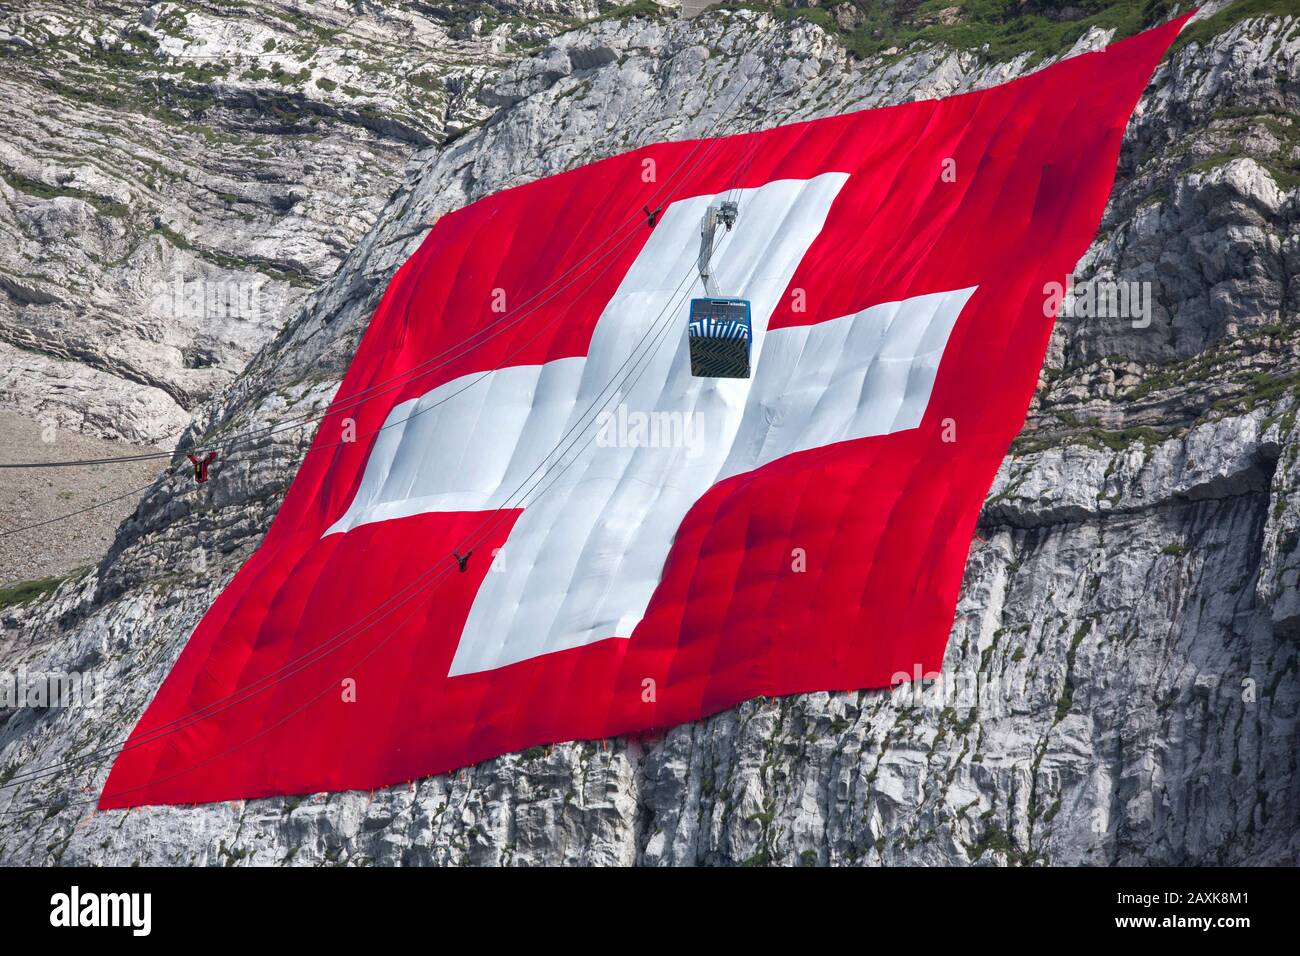 Säntisschwebebahn mit grösster Schweizerflagge Foto Stock